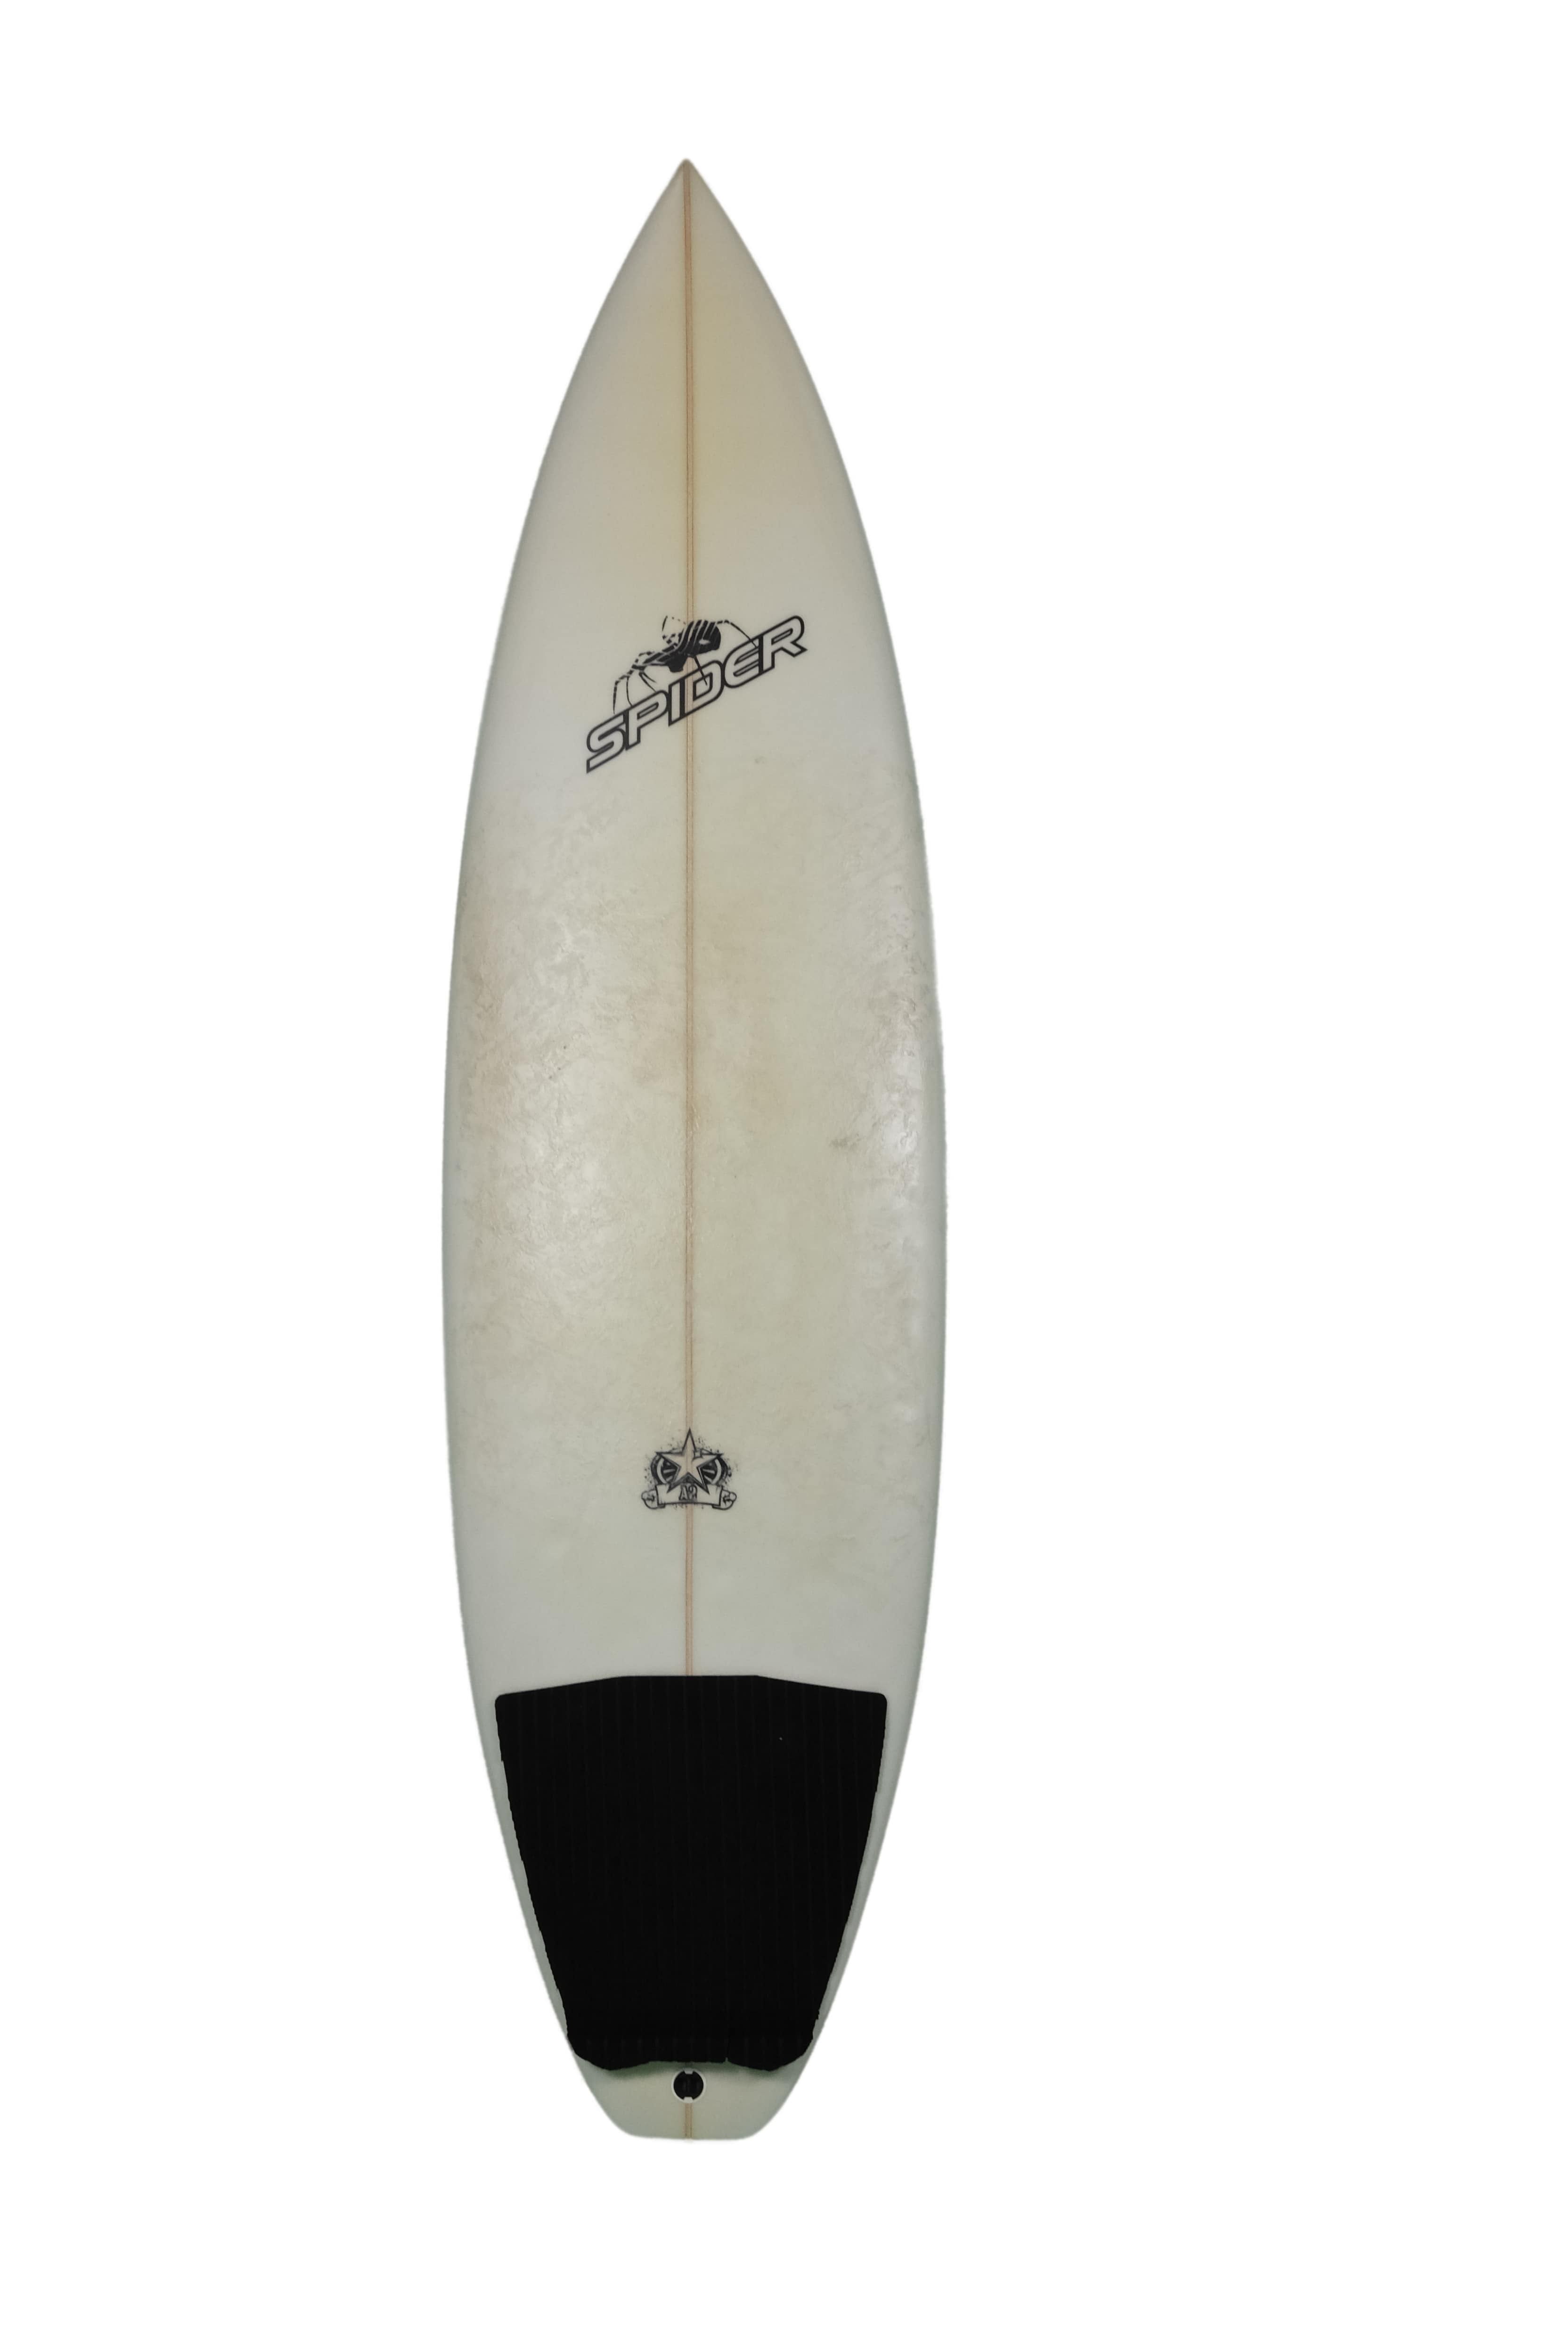 Spider 5'10 surfboard